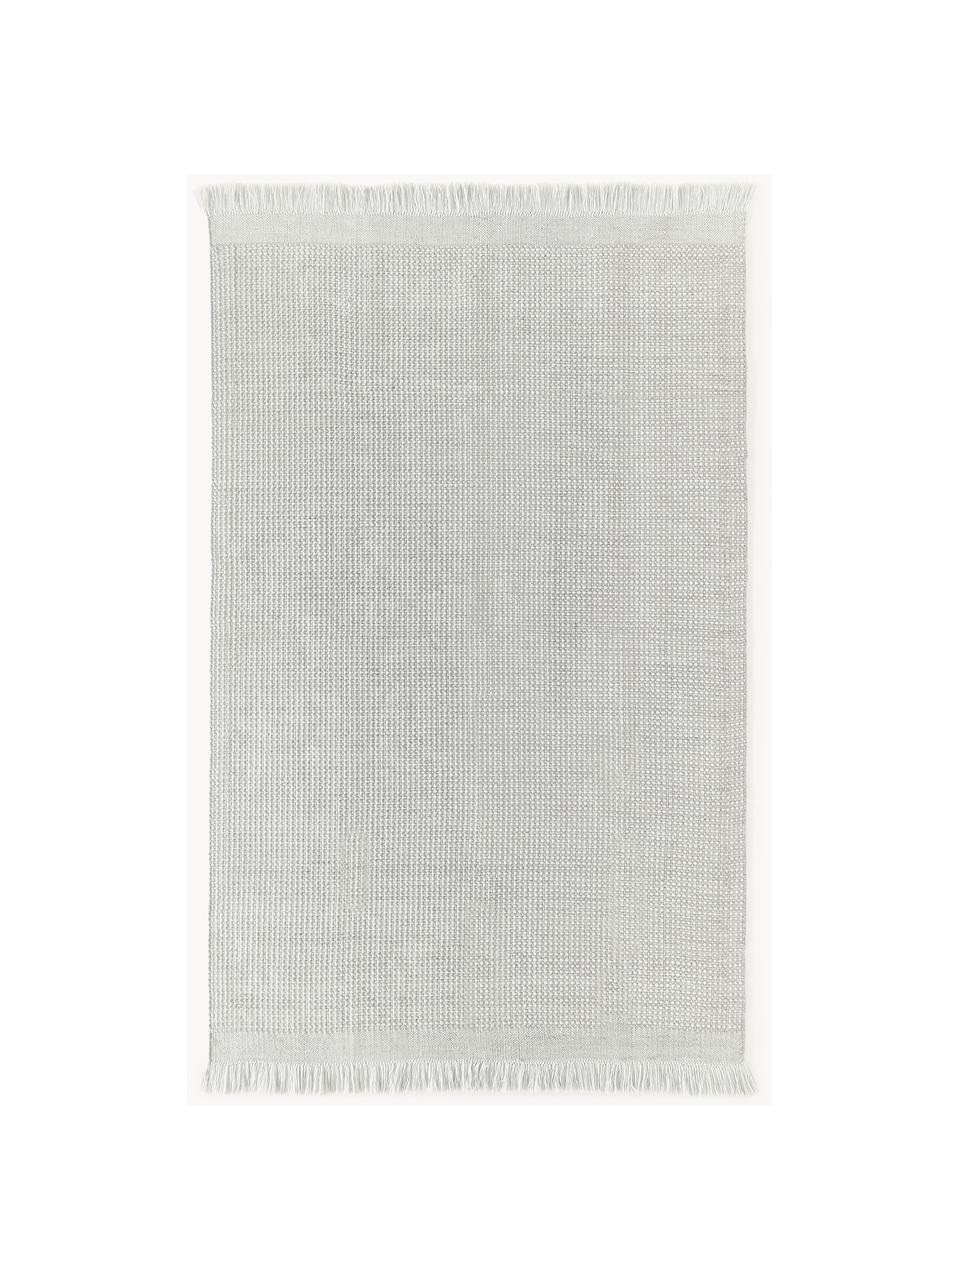 Tapis tissé à plat avec franges Ryder, 100 % polyester, certifié GRS, Gris clair, blanc, larg. 120 x long. 180 cm (taille S)